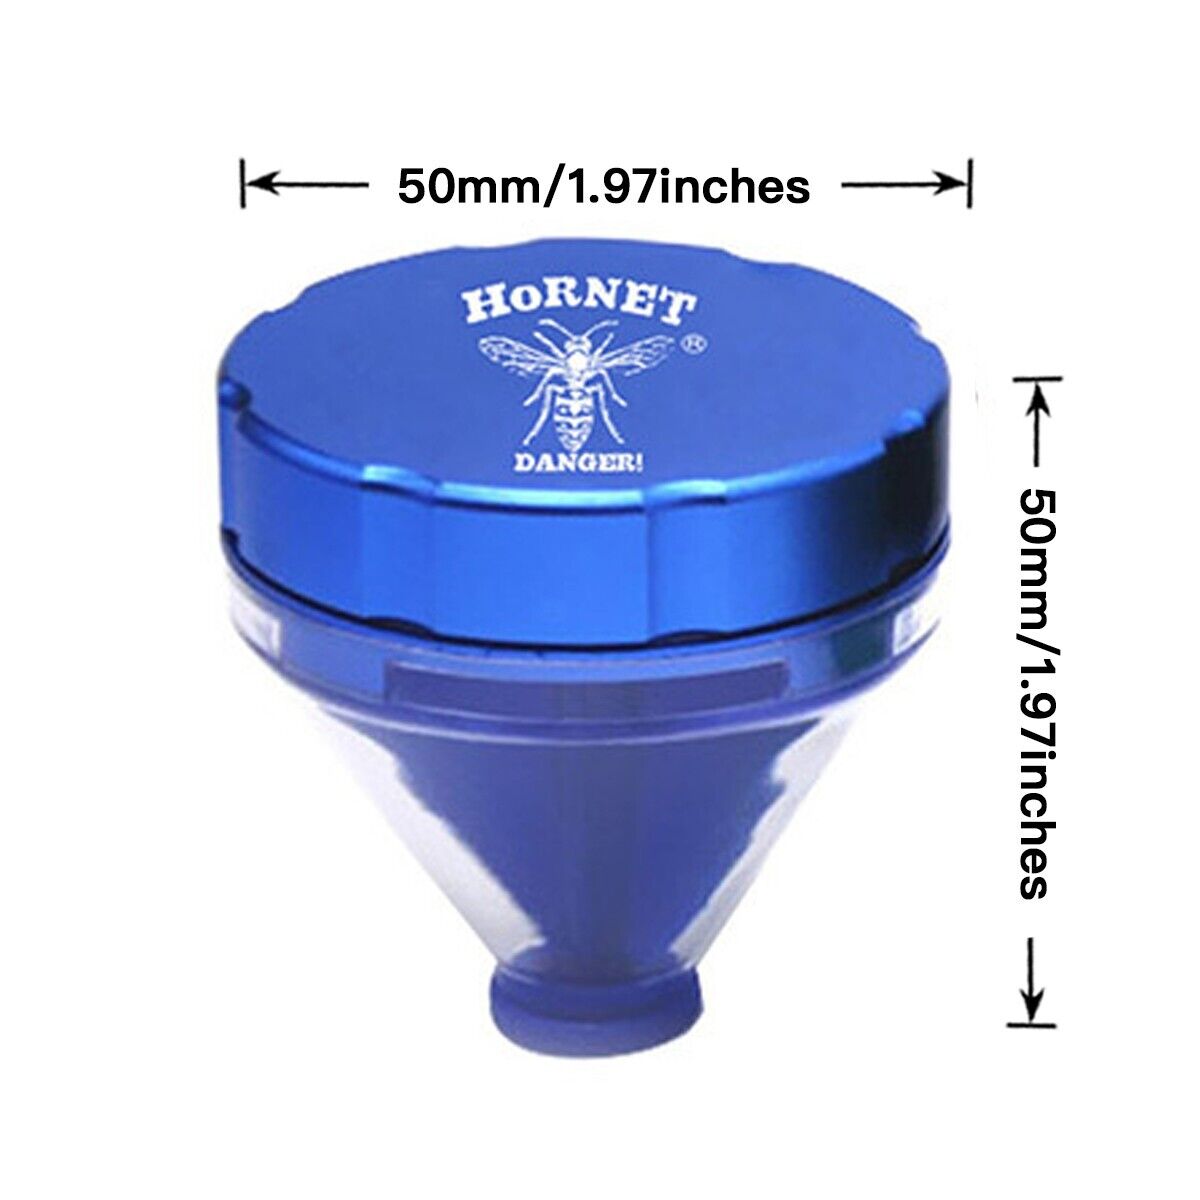 Flat Funnel Grinder Two-Layer 50mm Manual Metal Funnel Tobacco Grinder Blue